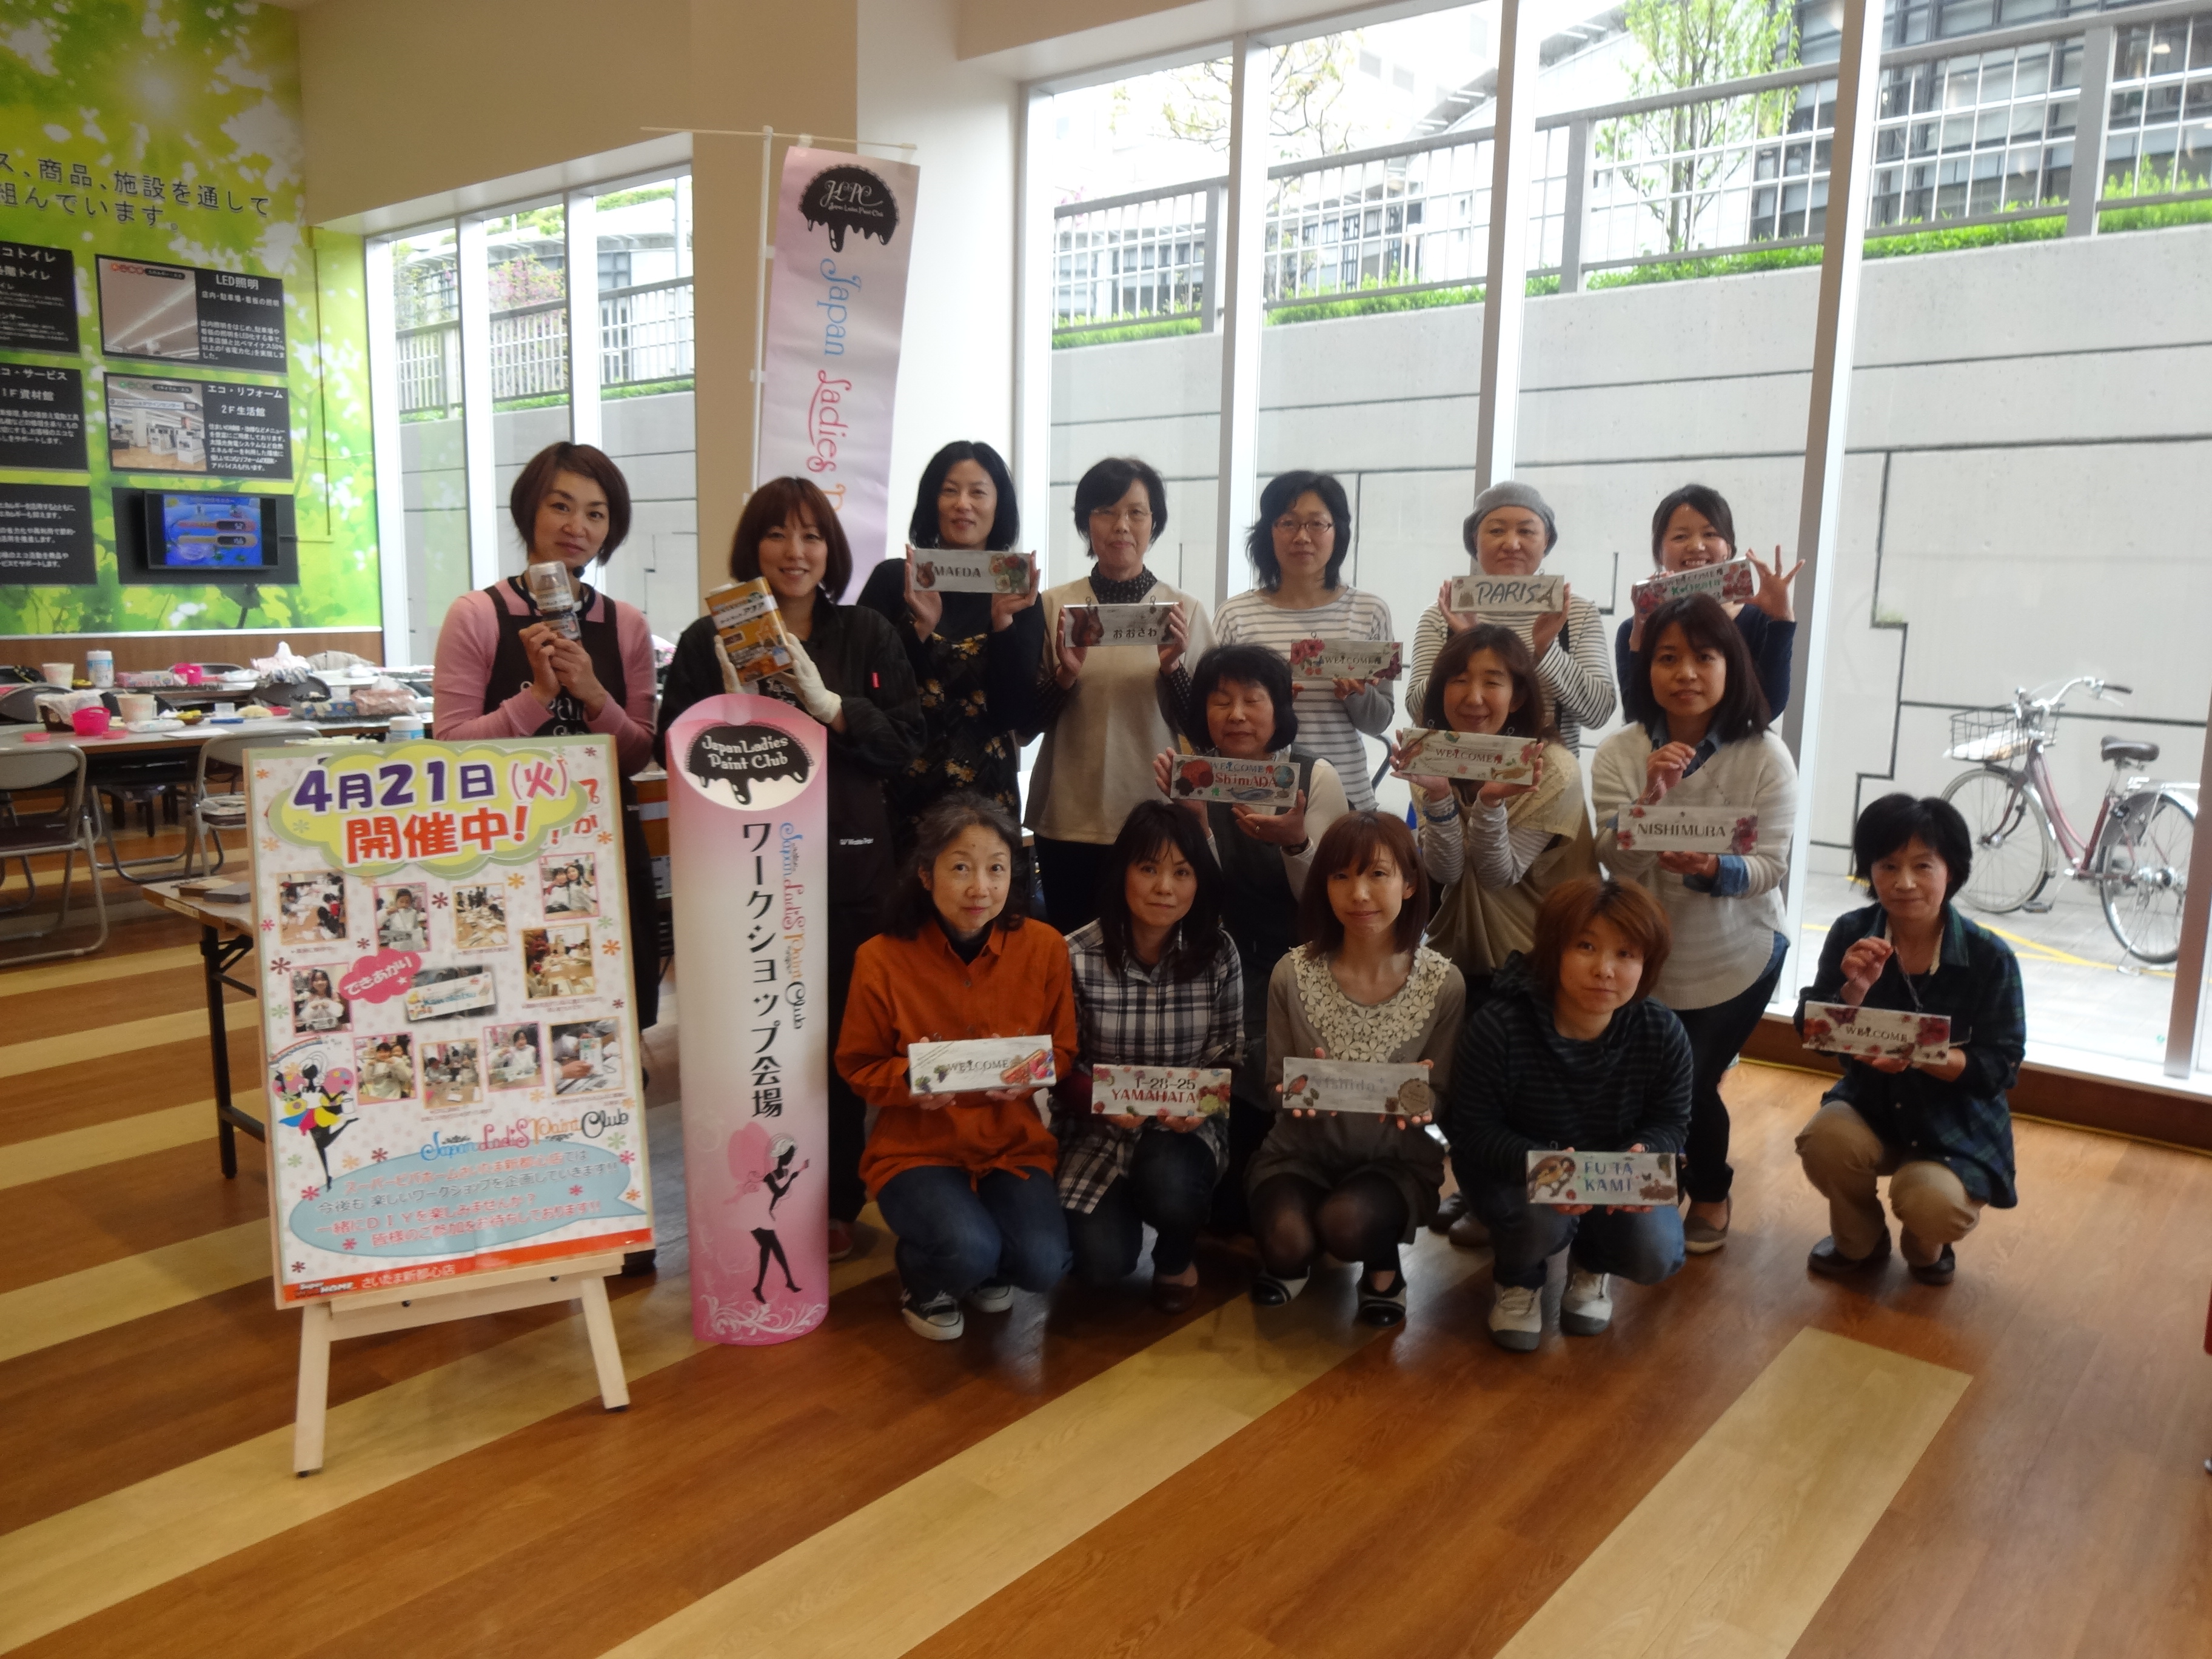 4 21 スーパービバホーム さいたま新都心店さまでワークショップ開催しました Japan Ladies Paint Club